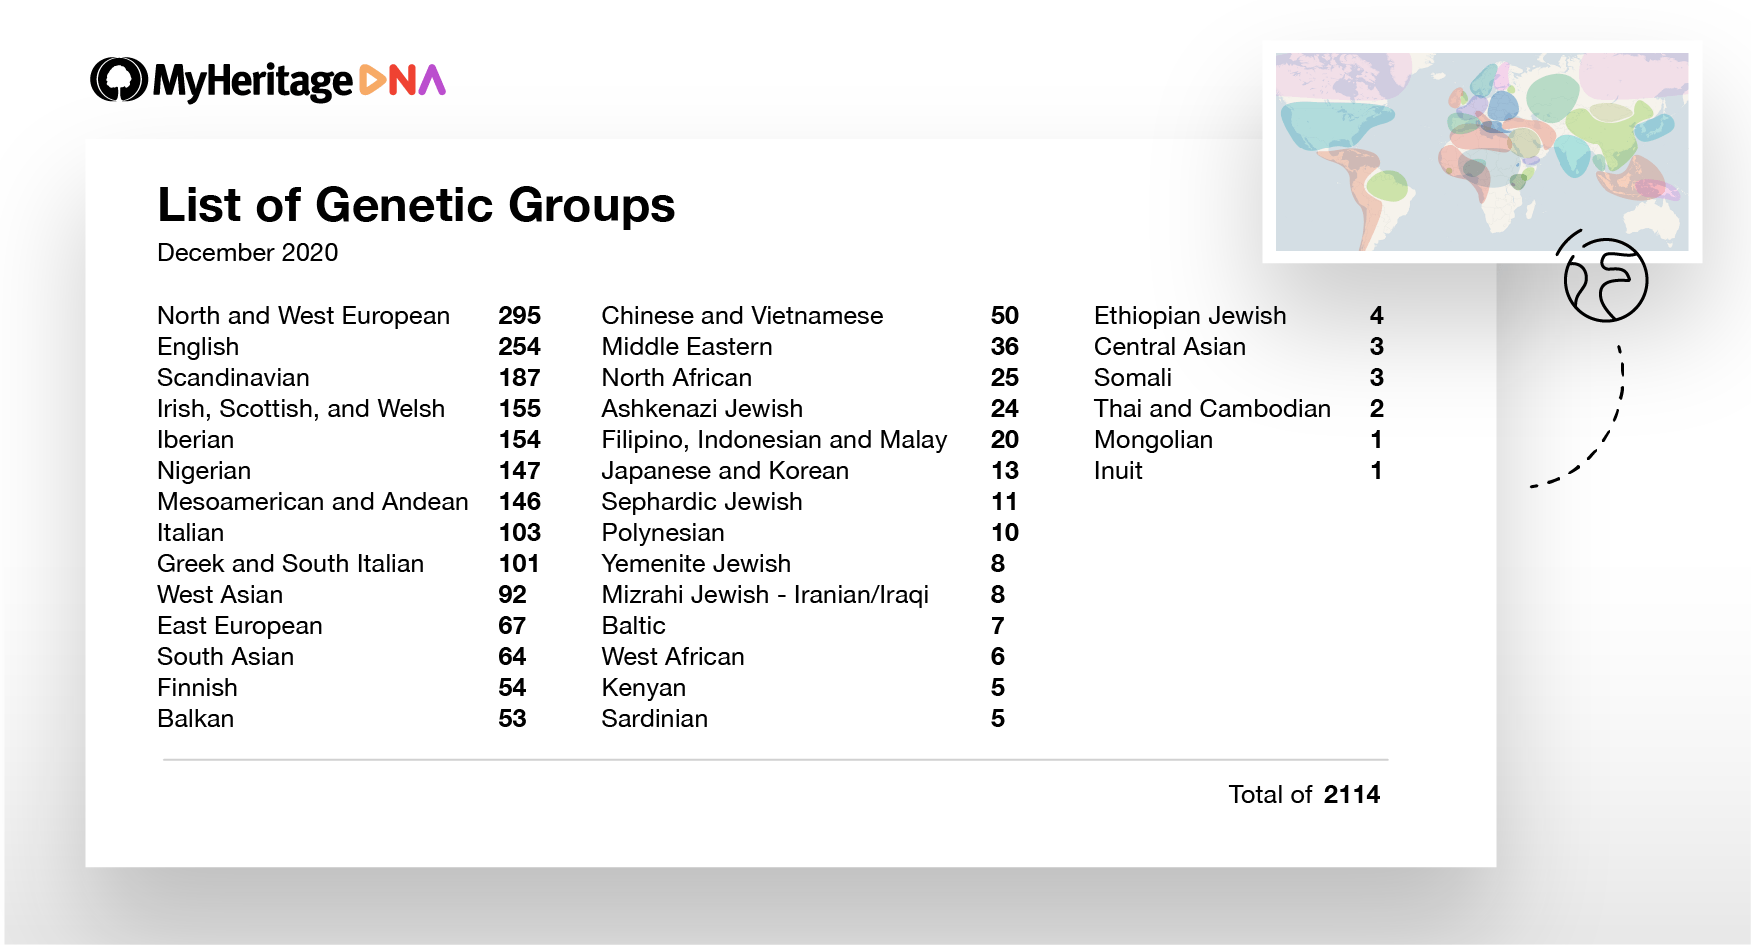 Auflistung der Anzahl der heute verfügbaren genetischen Gruppen, unterhalb ihrer wichtigsten Top-Level-Ethnizität. Zum Beispiel gibt es 103 genetische Gruppen, die überwiegend italienisch und 54 genetische Gruppen, die finnisch sind (Zum Vergrößern Bild bitte anklicken.)